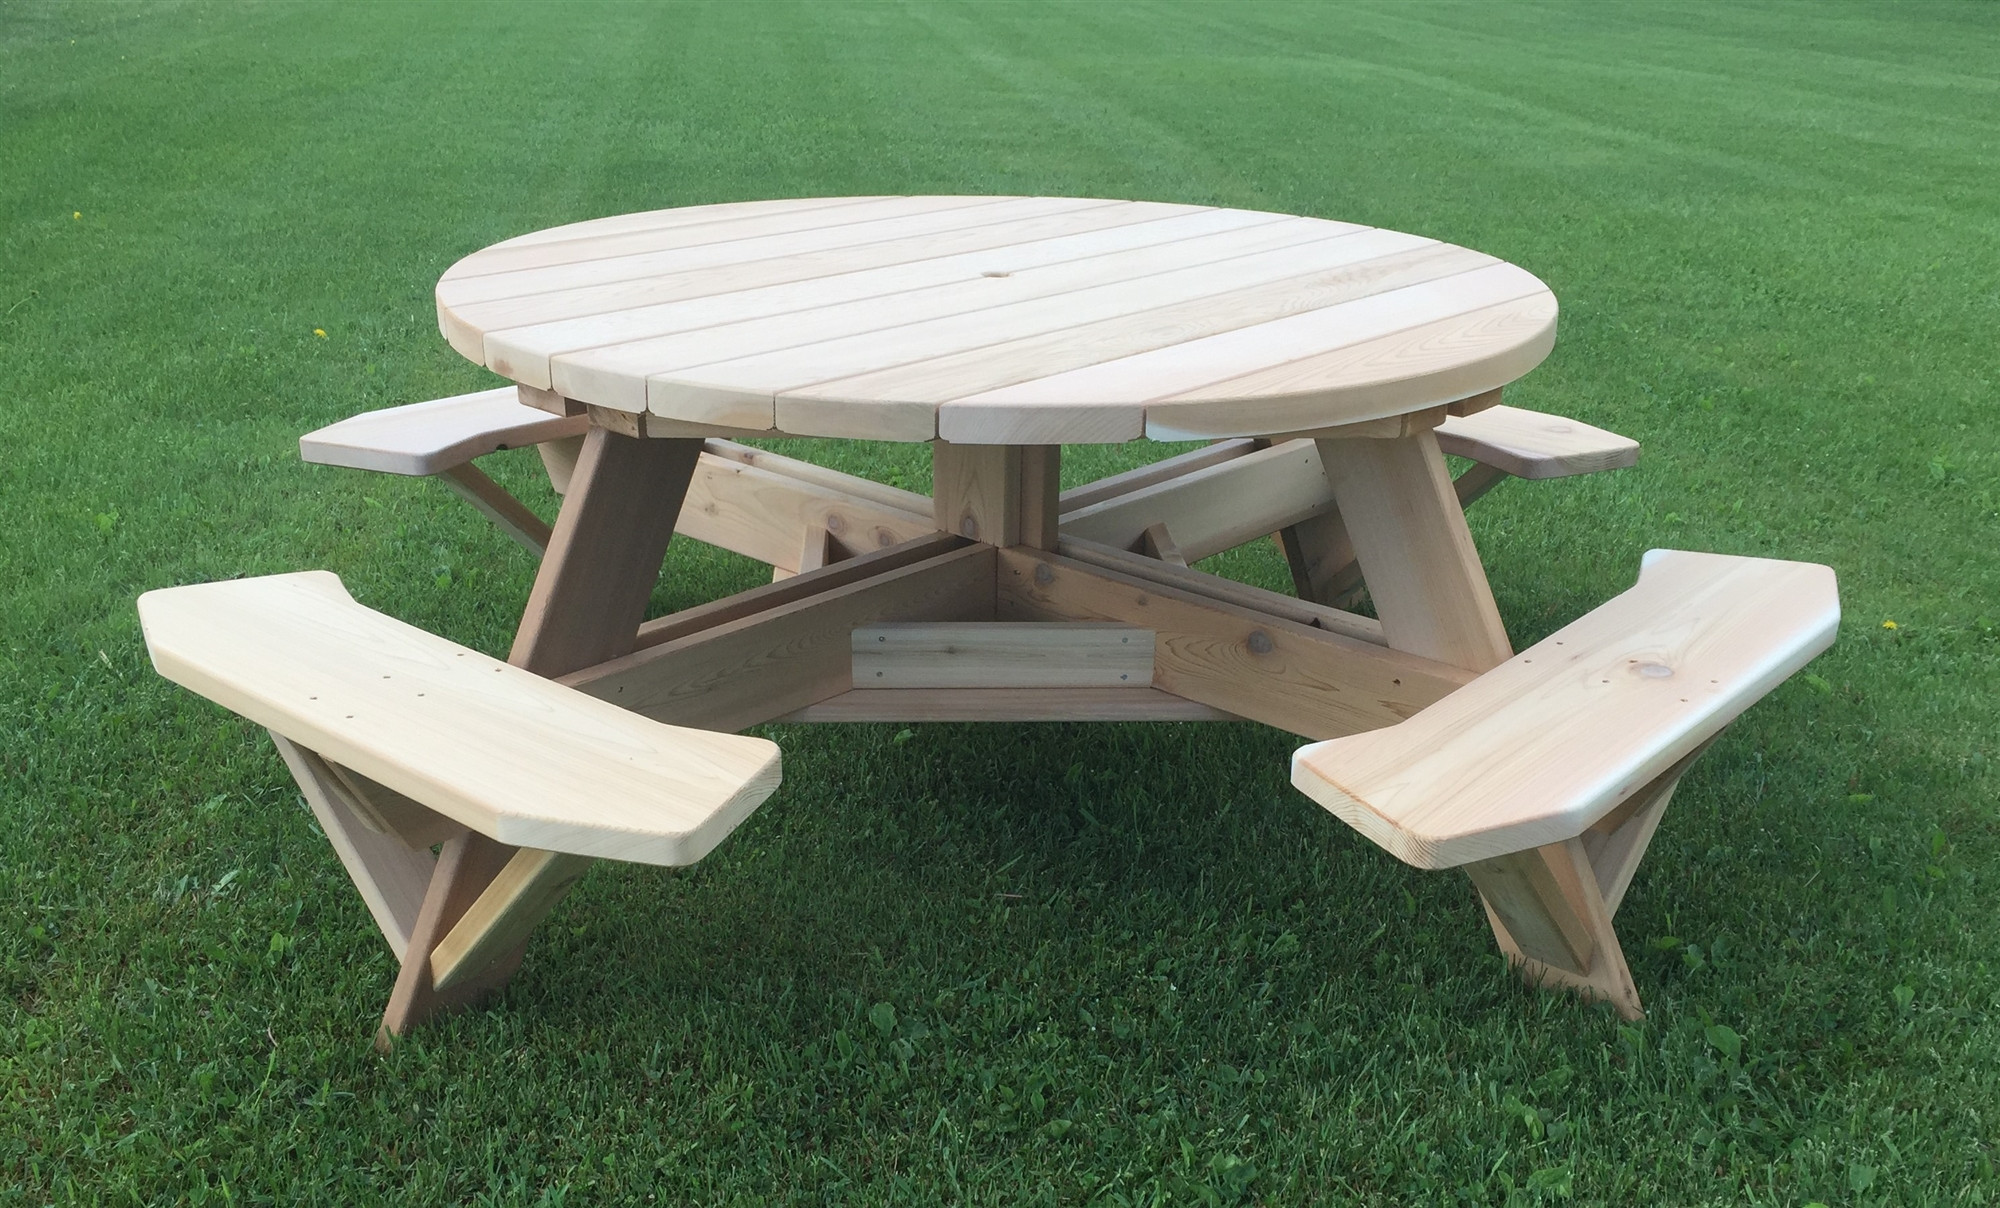 Backyard Picnic Table
 56" Round Cedar Patio Table